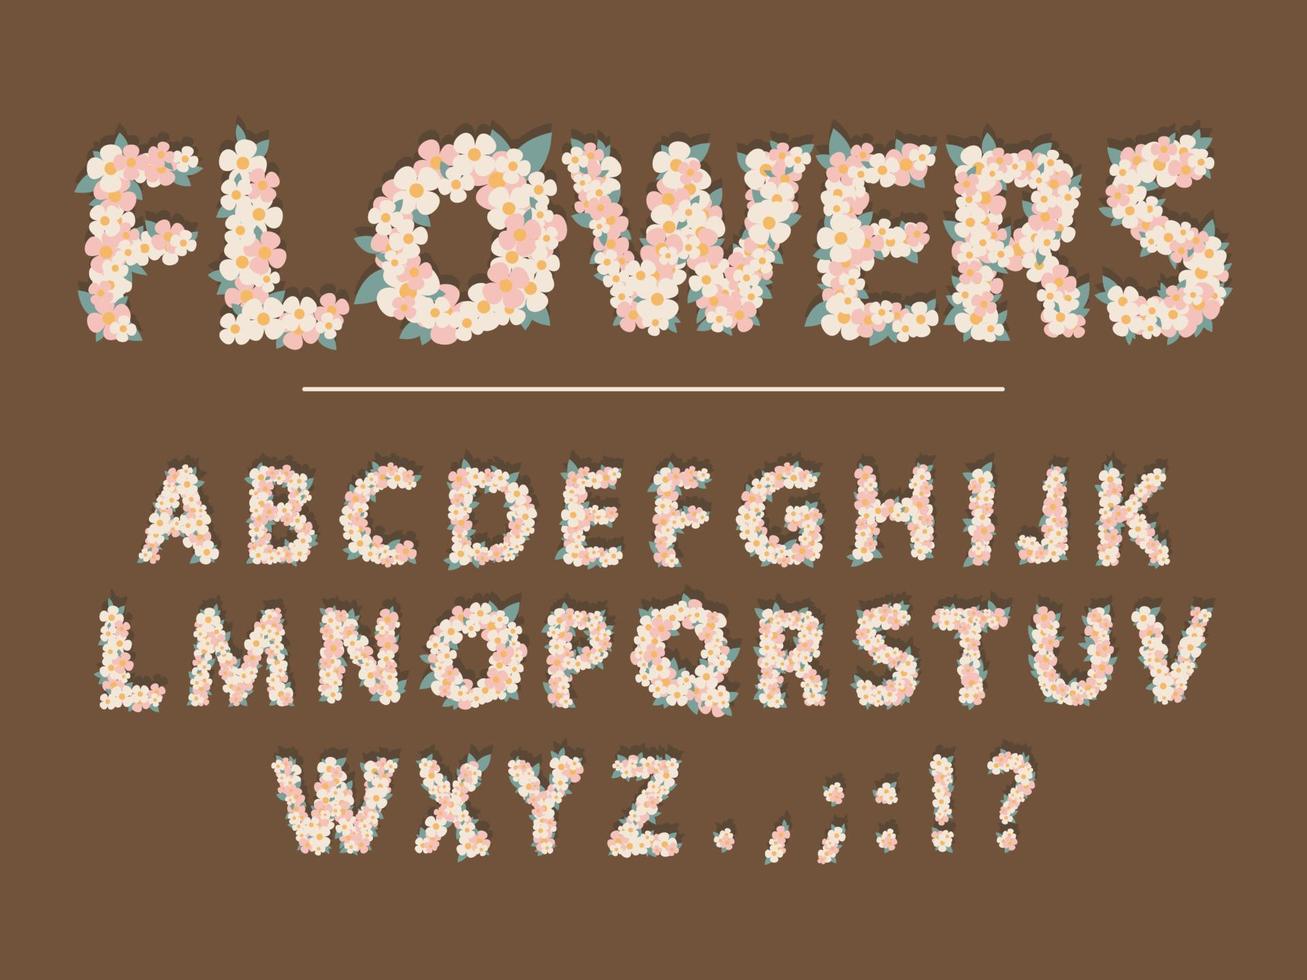 Frühlingsblumen-Cartoon-Schriftart. süße blumenbuchstaben für grußkarte, babyparty, valentinstag, blumenladen, mädchenmagazin, collagen. das Papier wird ausgeschnitten. Vektor-Illustration vektor